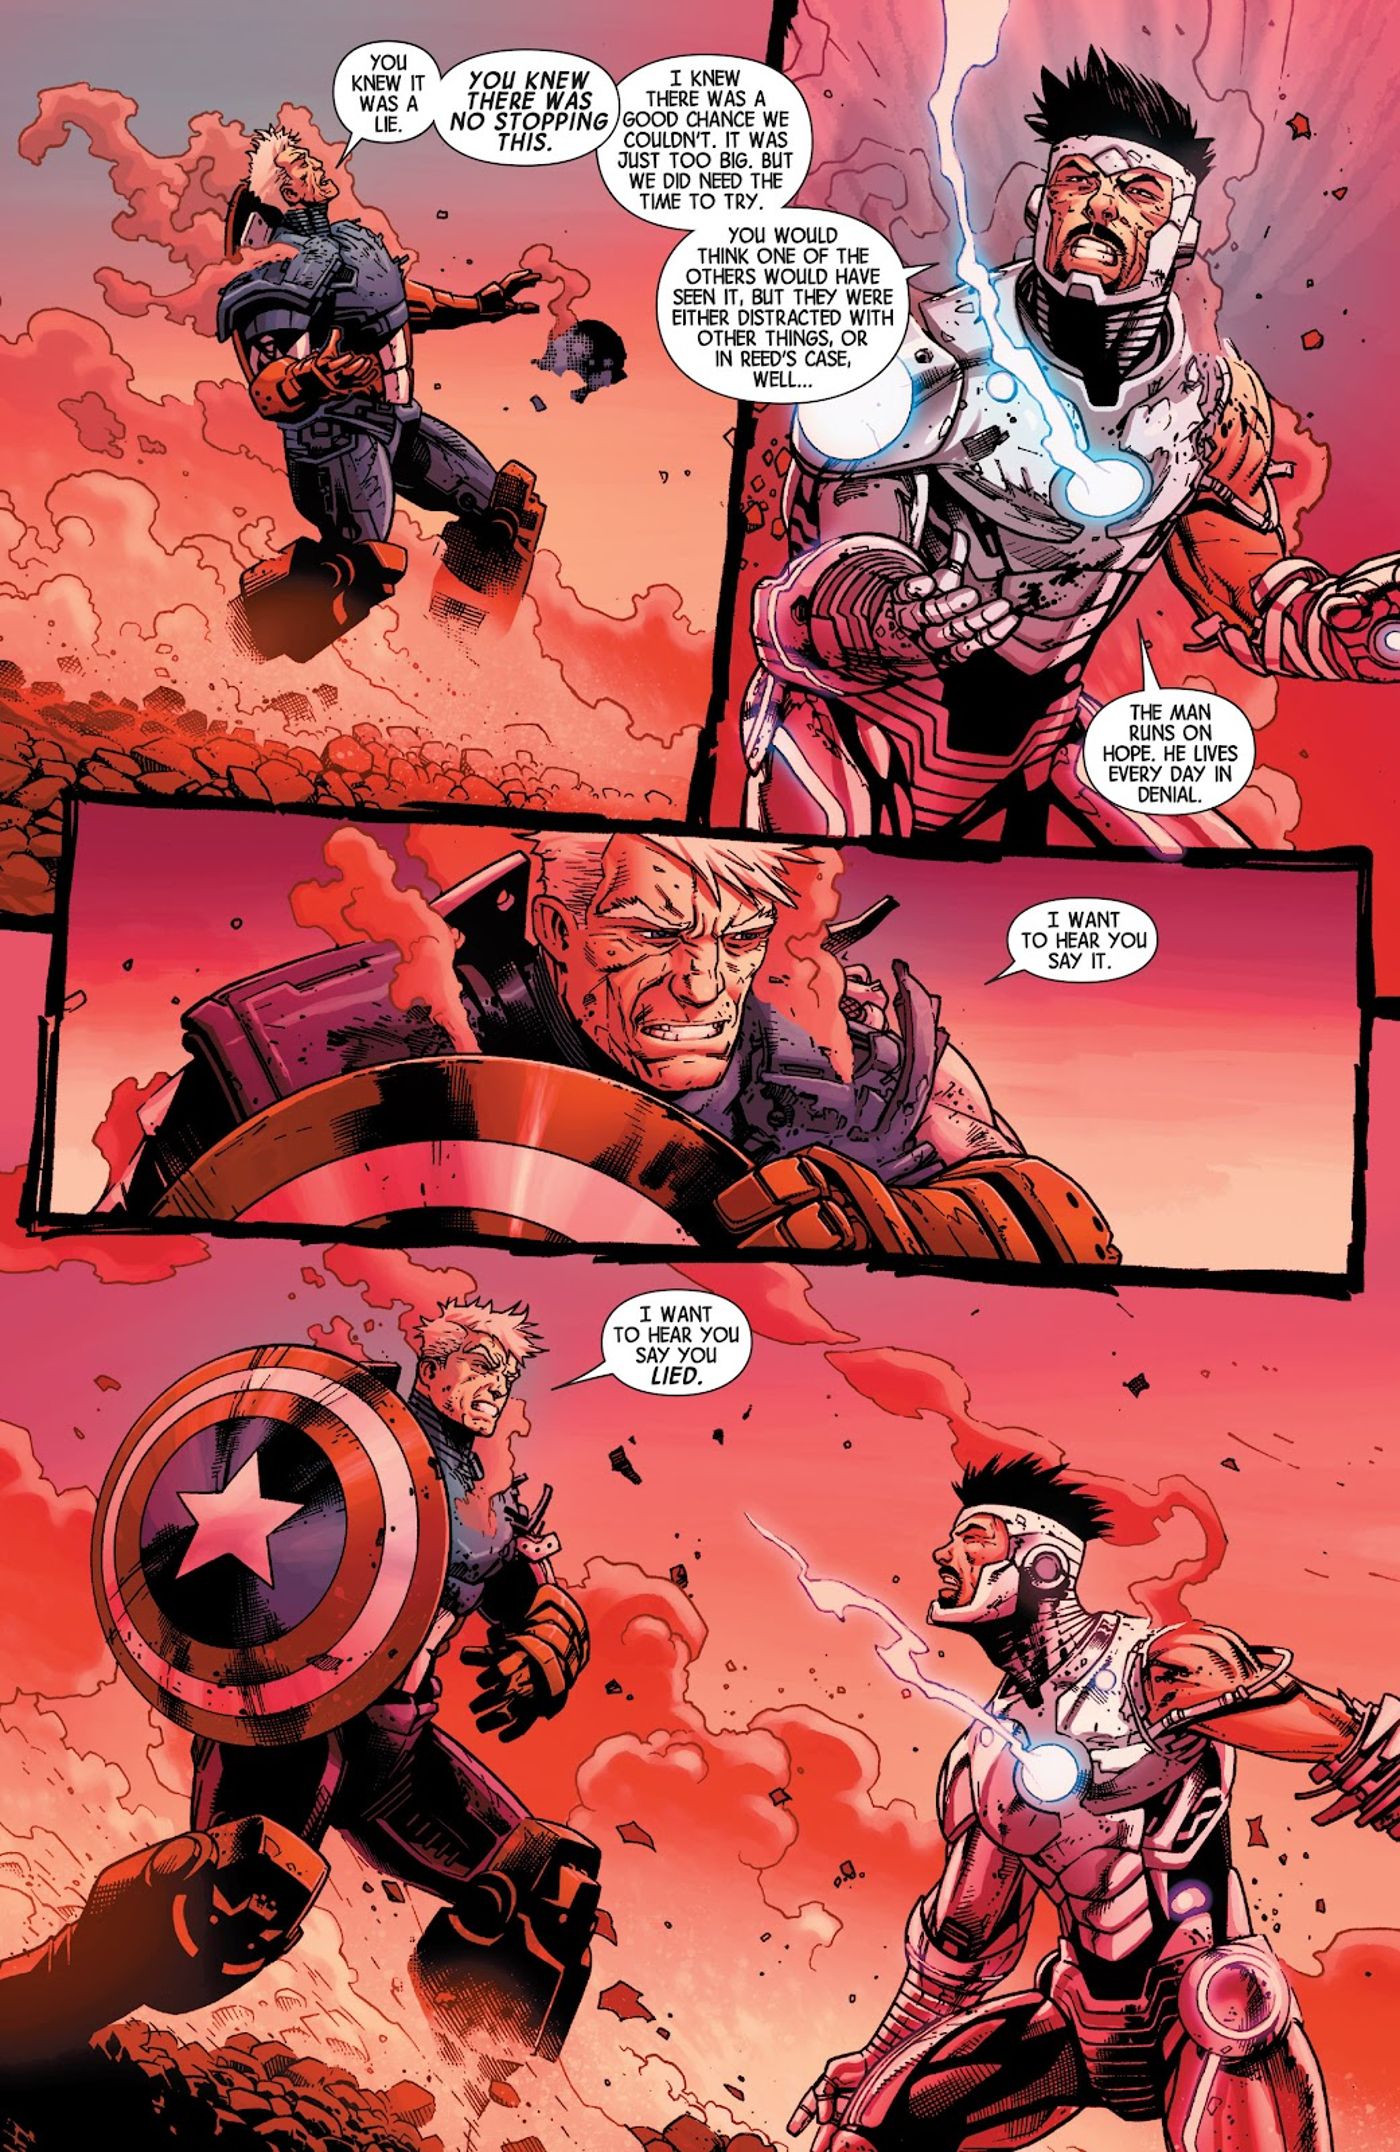 Iron-Man-Capitão-América-final-batalha